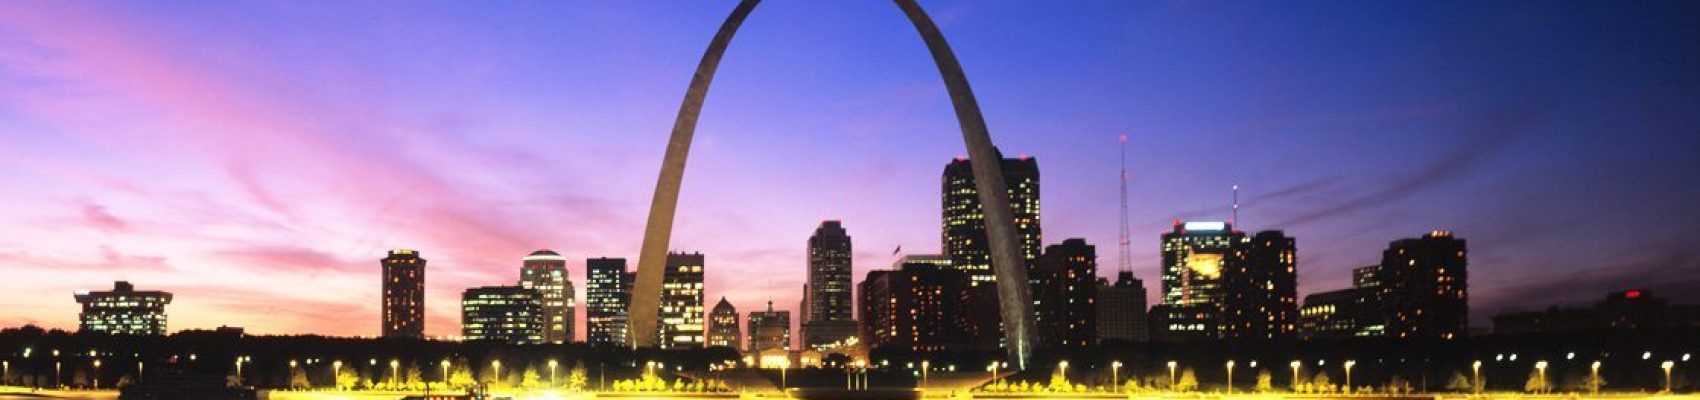 St. Louis Cardinals Baseball – 16th International Congress of